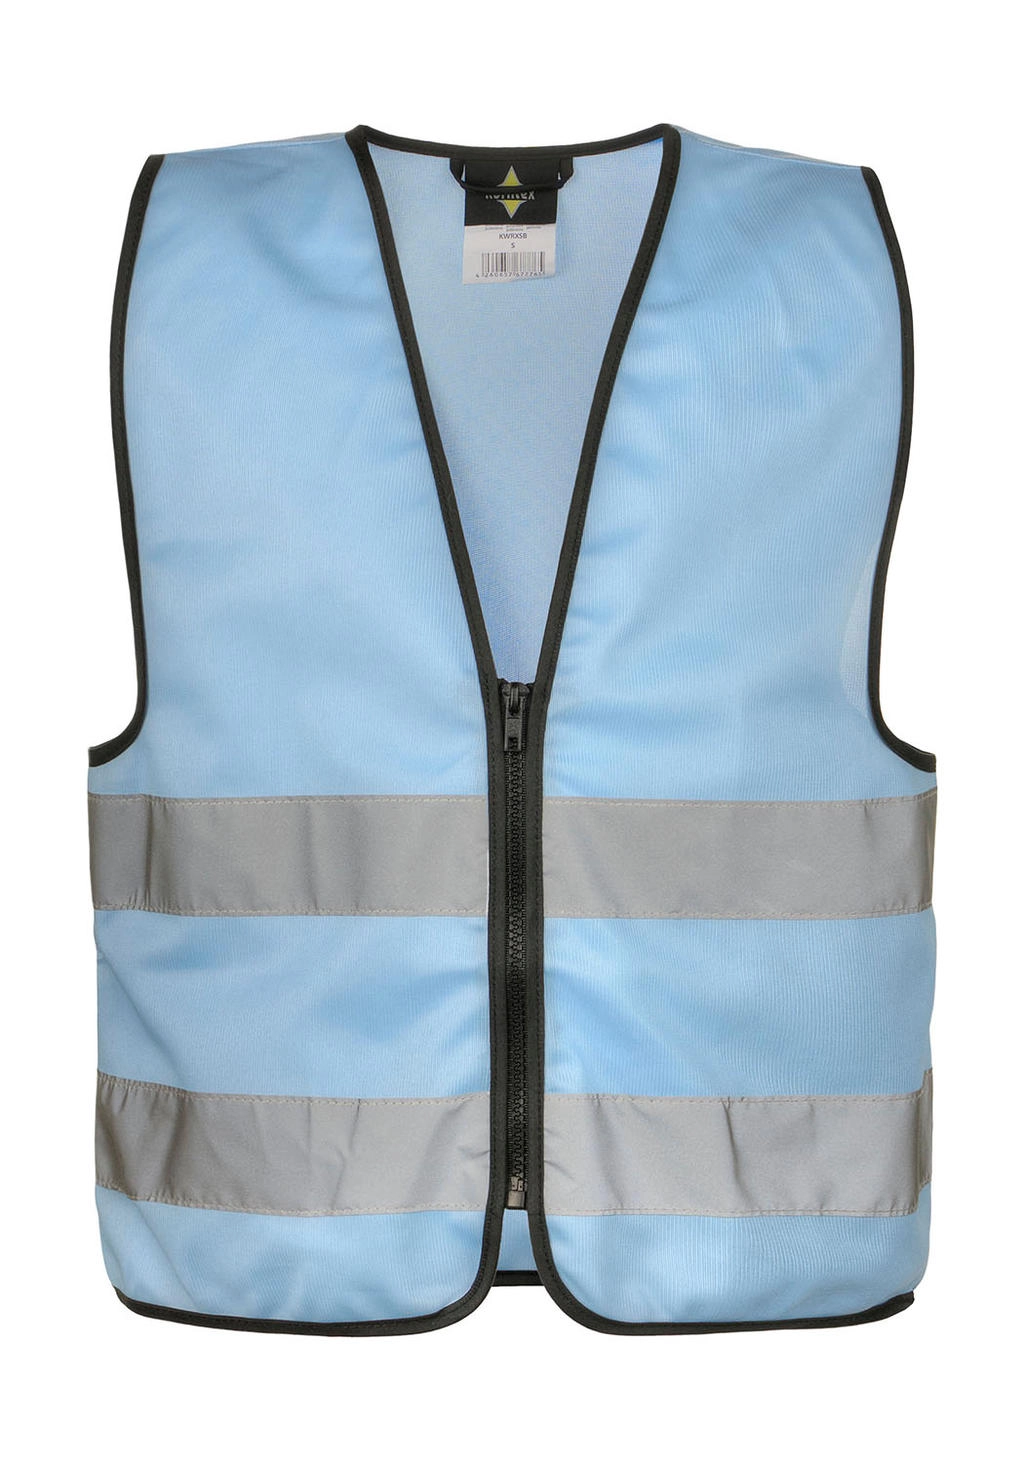 Functional Zipper Vest for Kids 